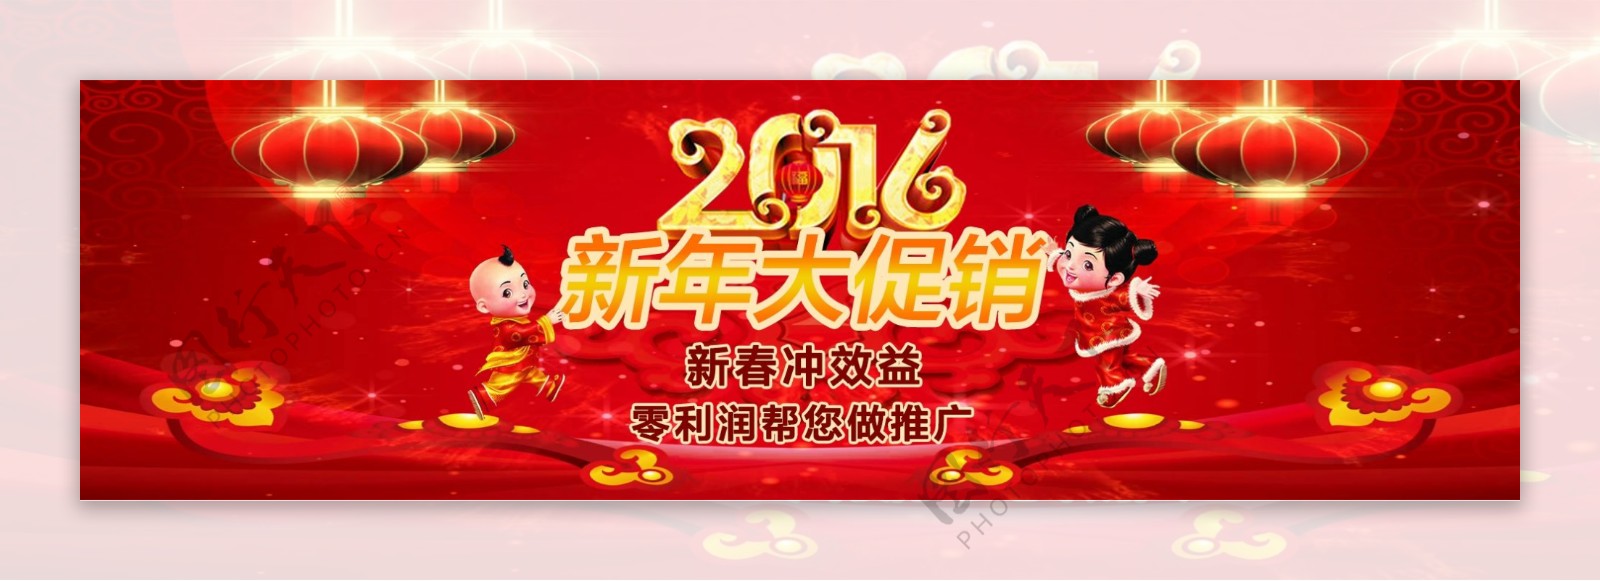 公司新年促销活动banner